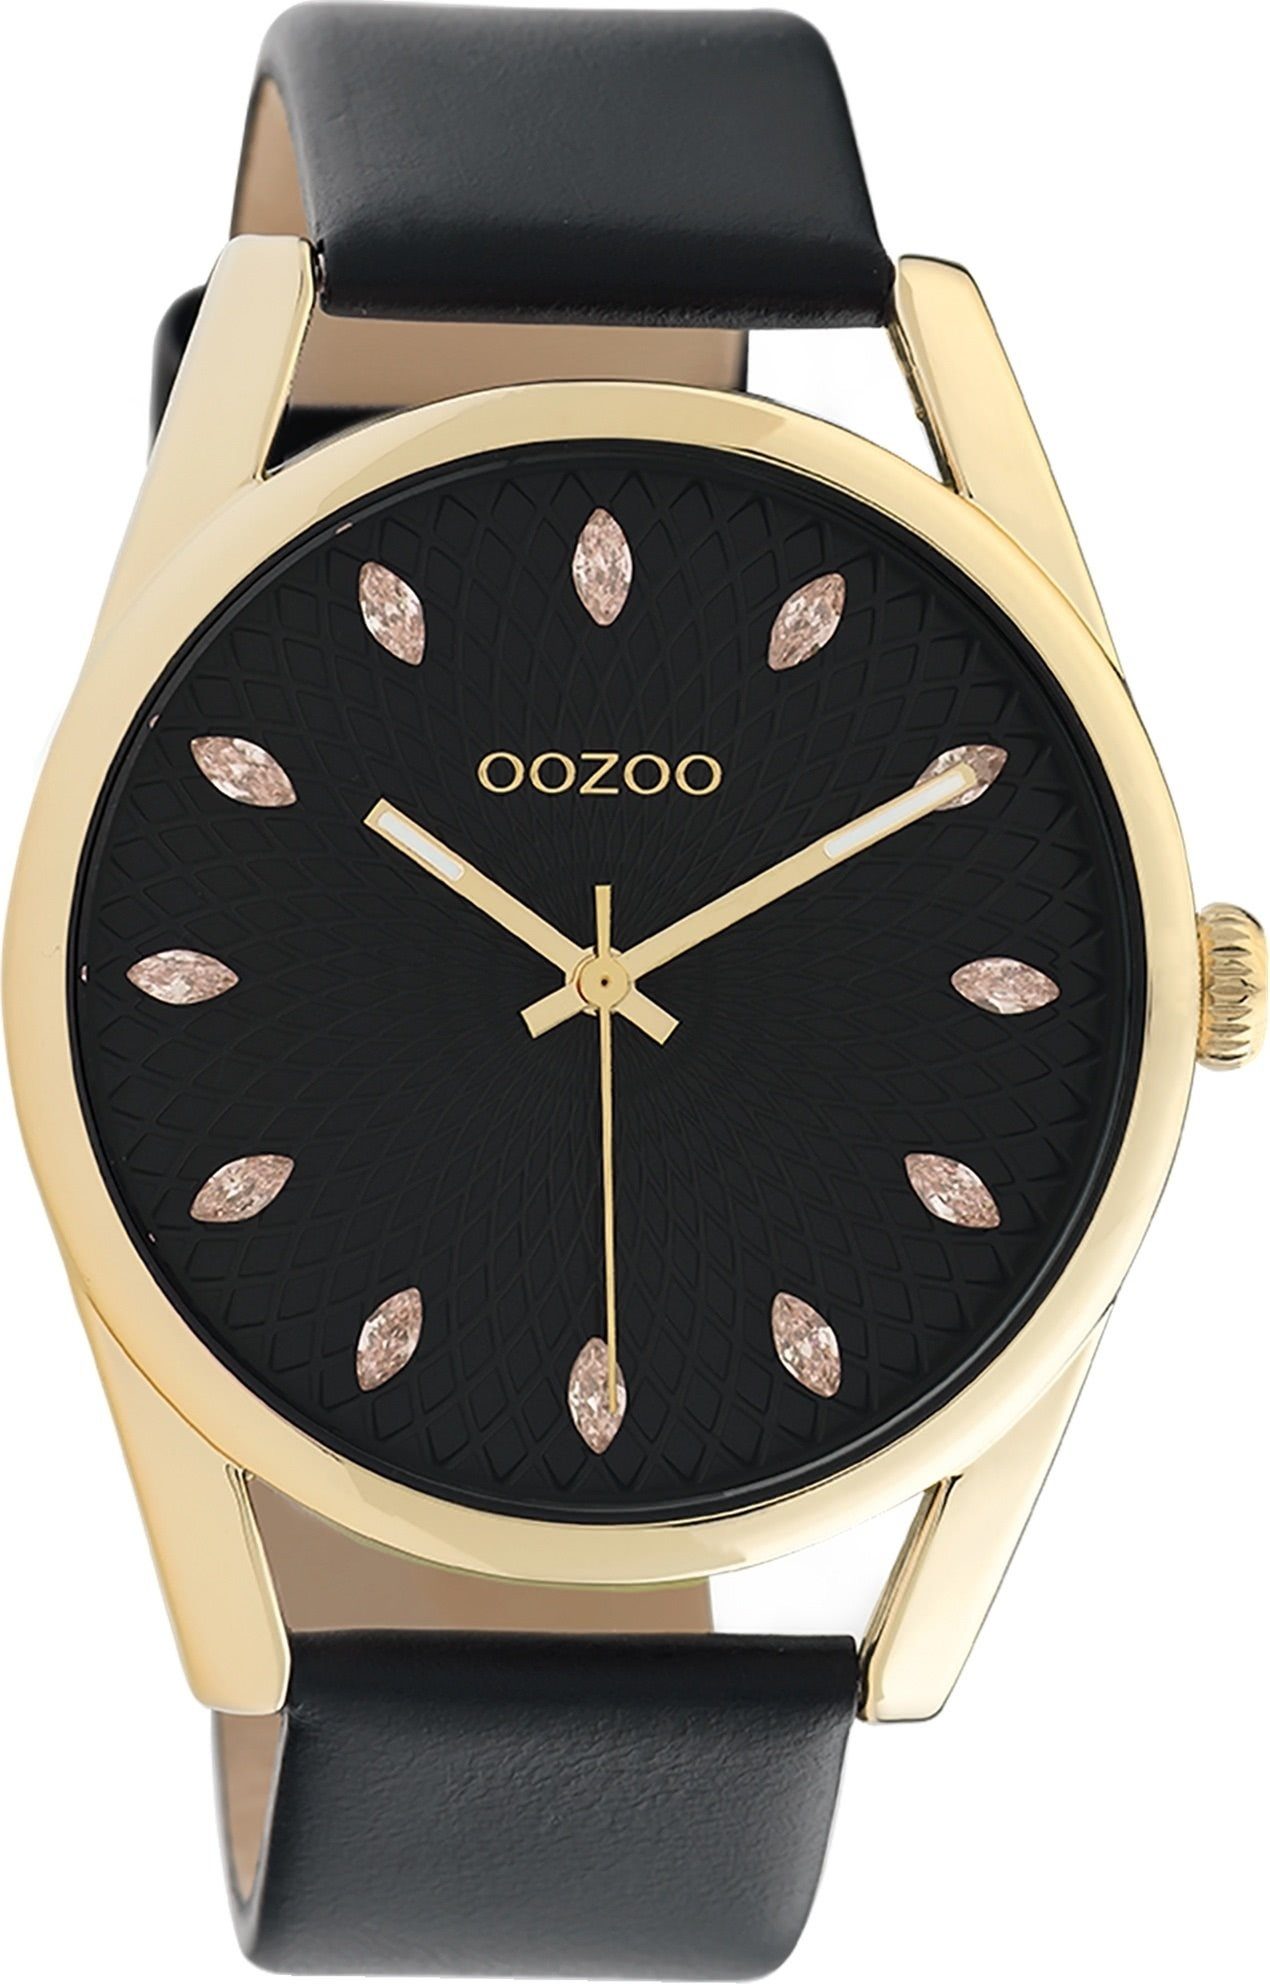 OOZOO Quarzuhr Oozoo Damen Armbanduhr OOZOO Timepieces, Damenuhr rund, groß (ca. 45mm), Lederarmband schwarz, Fashion